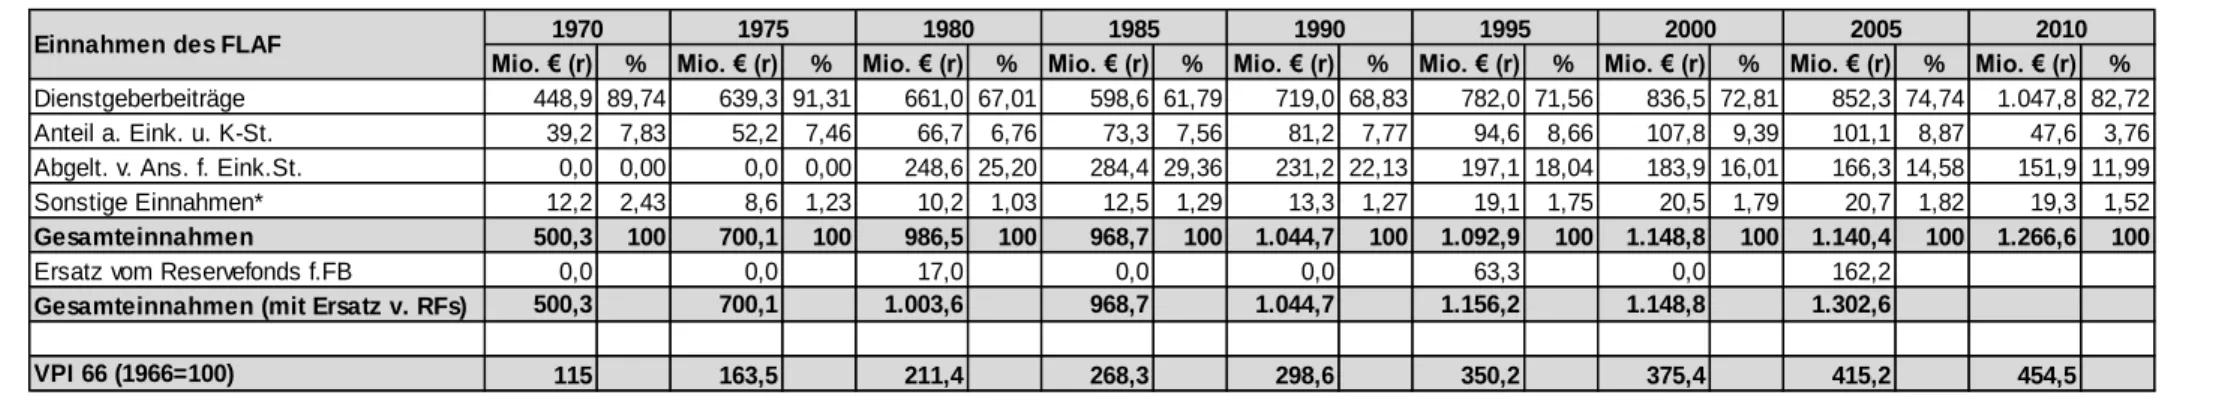 Tab. 6: Einnahmen des FLAF in Mio. € (bereinigt um Verbraucherpreisindex 1966=100) 